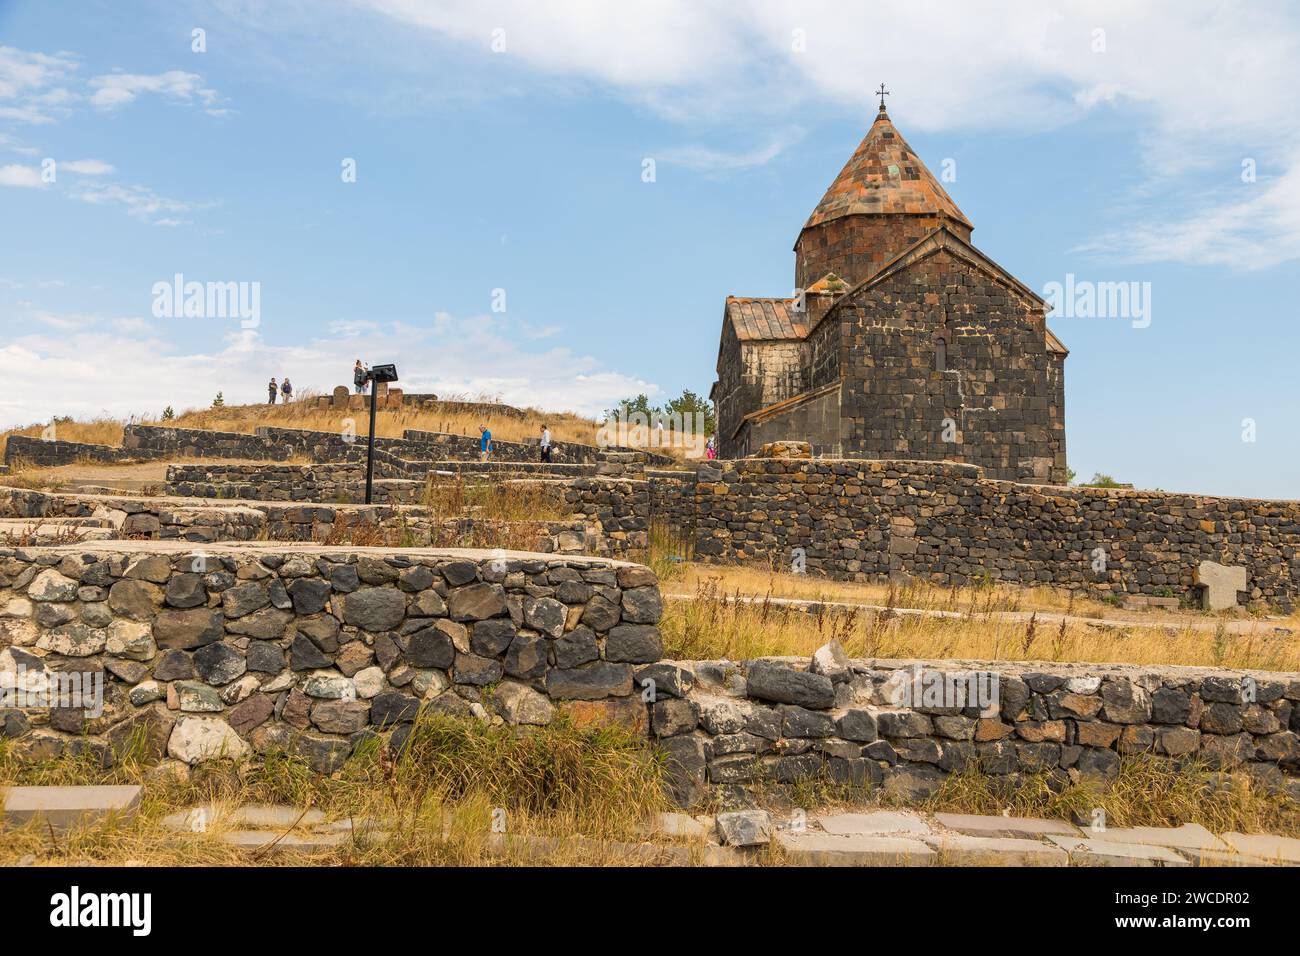 Sevanavank, Armenien - 2. September 2019: Blick auf die Sevanavank, Klosteranlage am Ufer des Sewan-Sees. Surp Arakelots, was den Heiligen Apo bedeutet Stockfoto